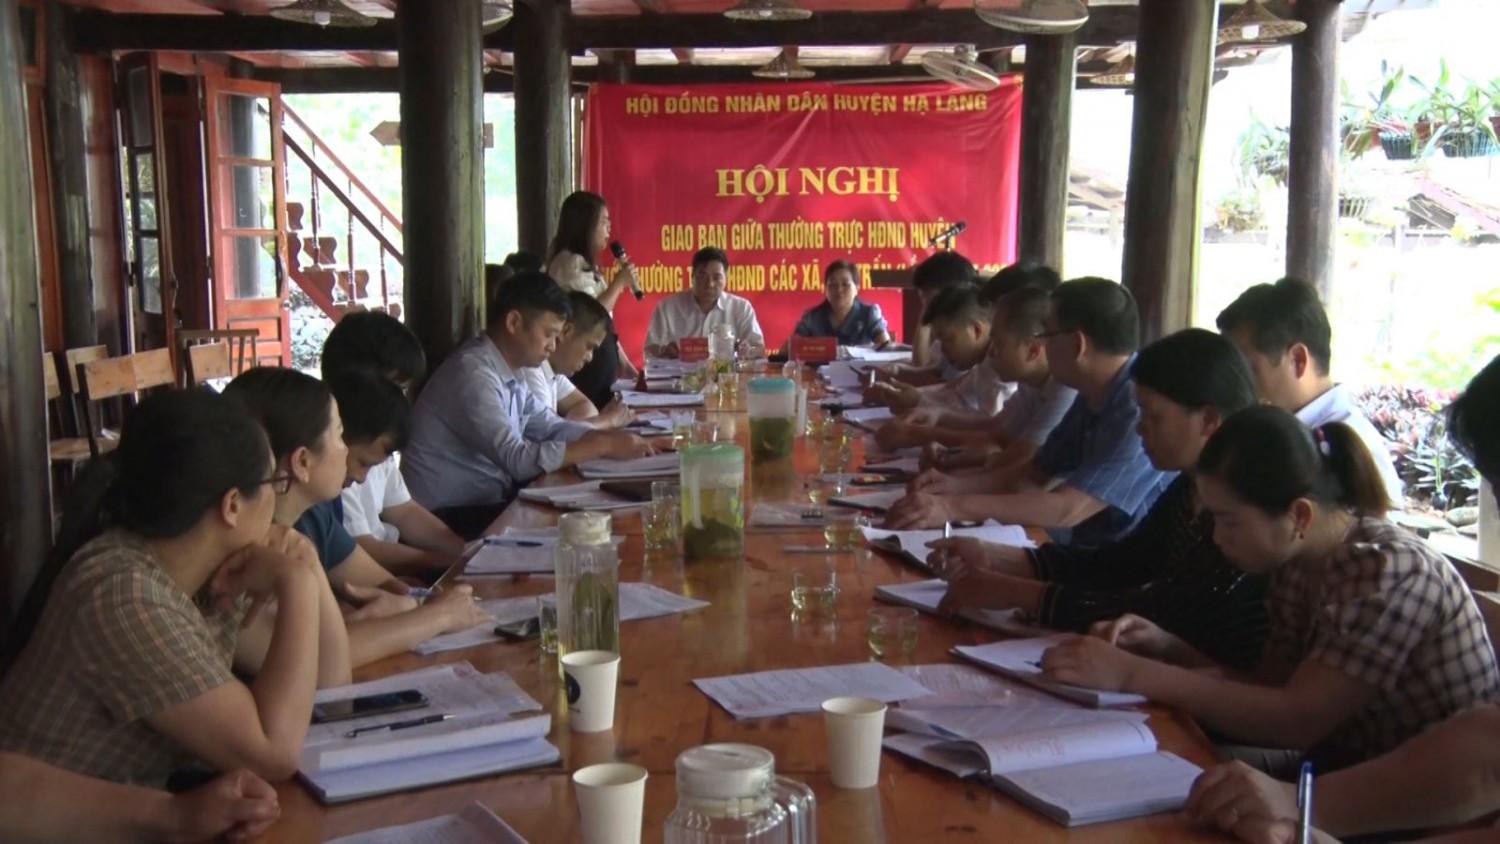 Hội nghị giao ban giữa Thường trực HĐND huyện Hạ Lang với Thường trực HĐND các xã, thị trấn